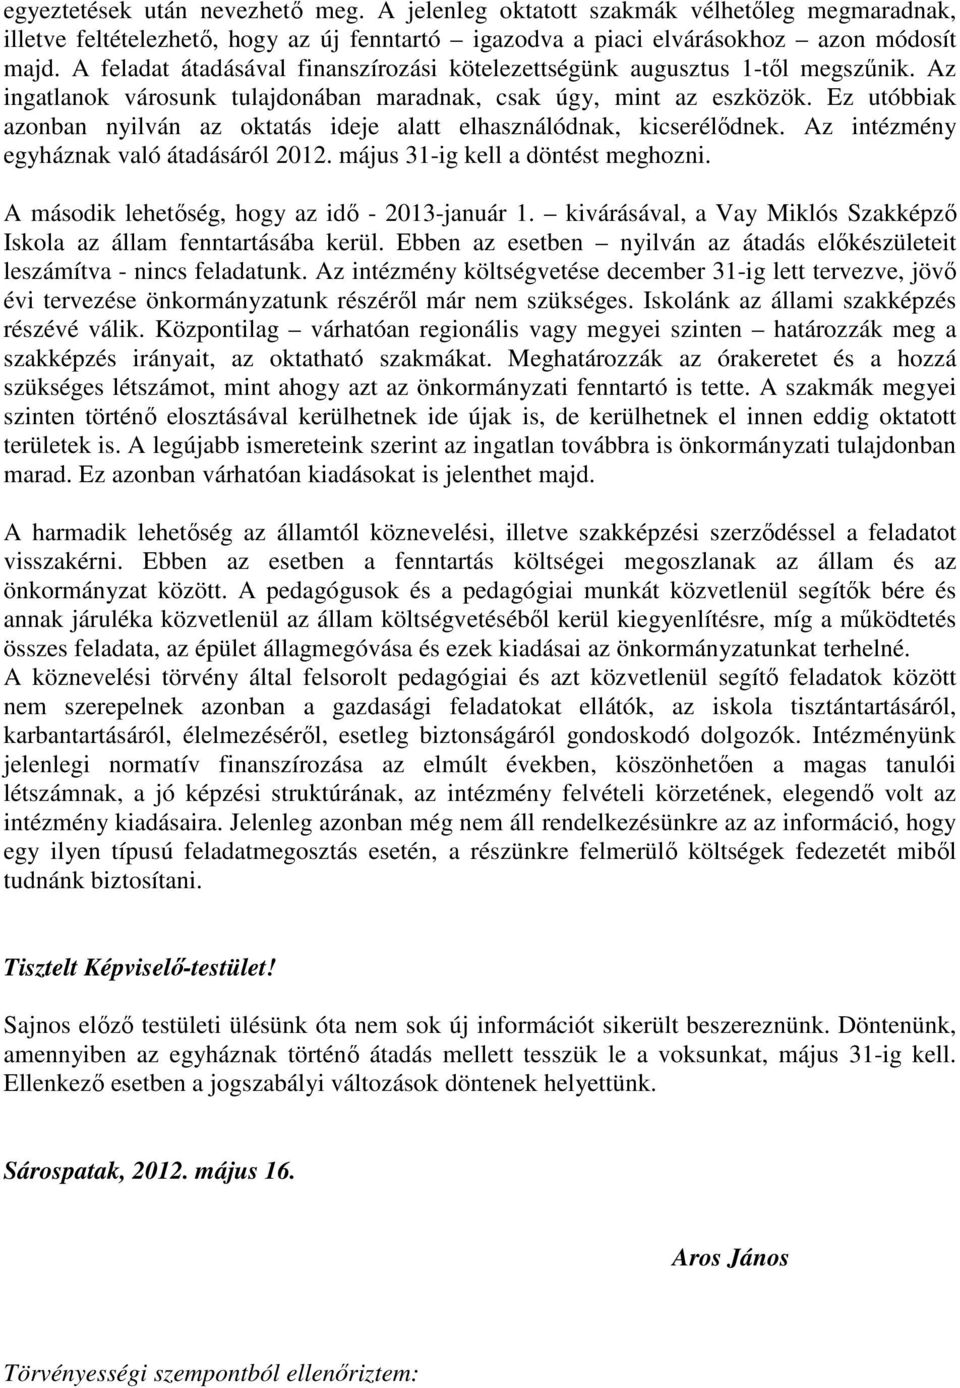 Ez utóbbiak azonban nyilván az oktatás ideje alatt elhasználódnak, kicserélıdnek. Az intézmény egyháznak való átadásáról 2012. május 31-ig kell a döntést meghozni.